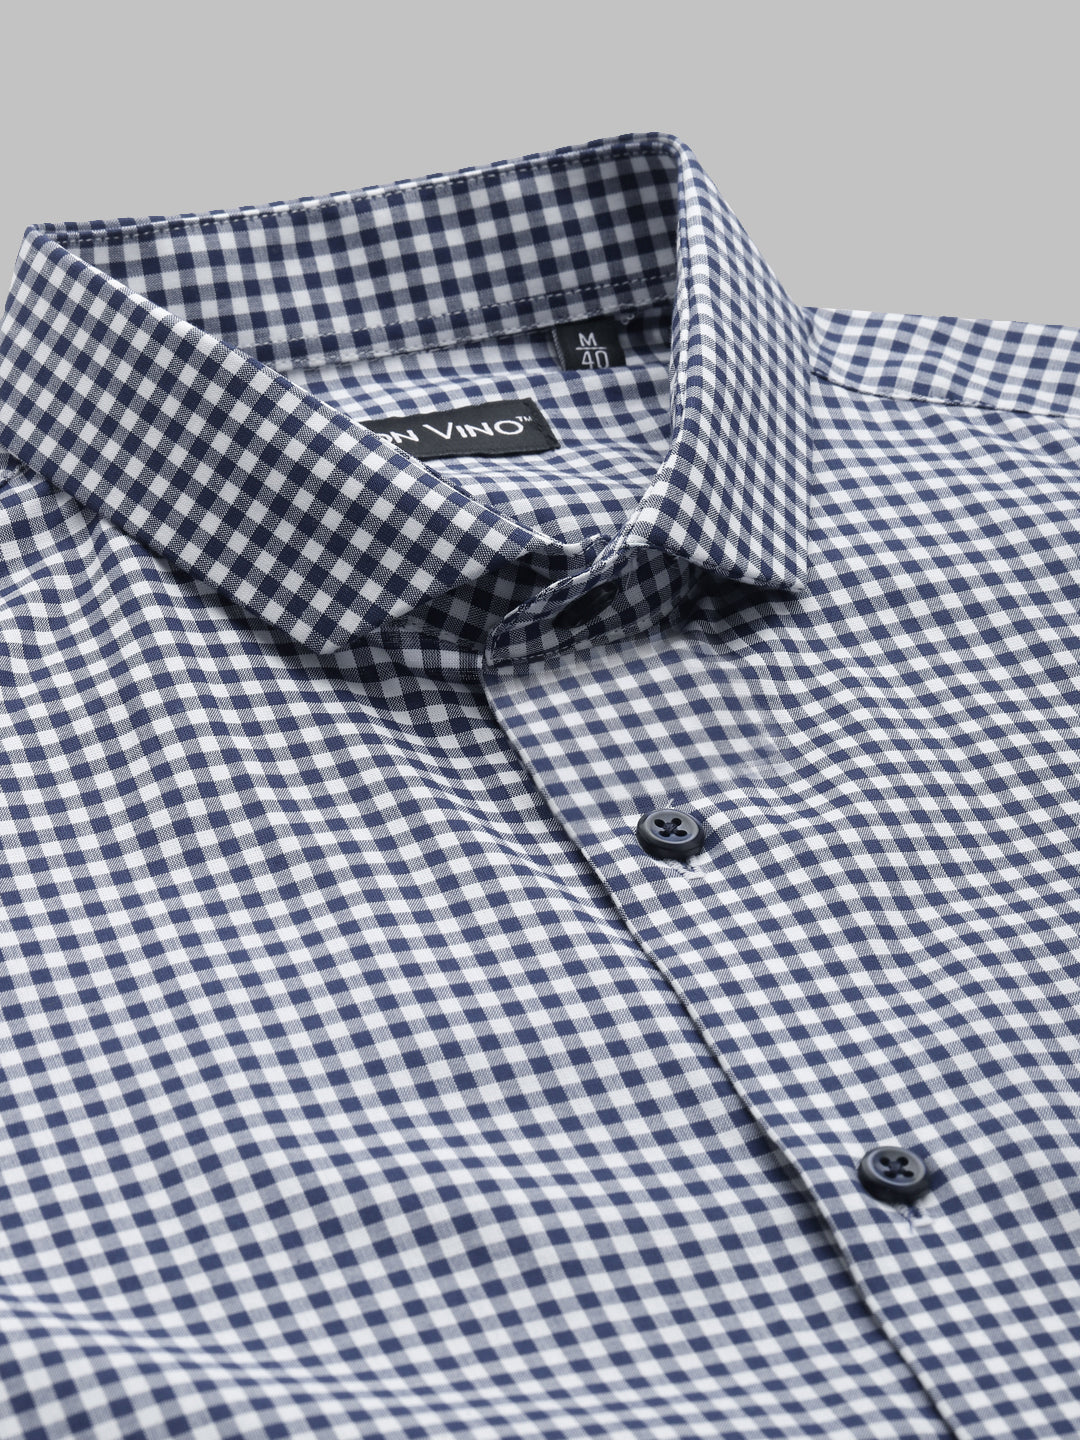 Don Vino Men's Blue Checks Regular Fit Full Sleeve Shirt